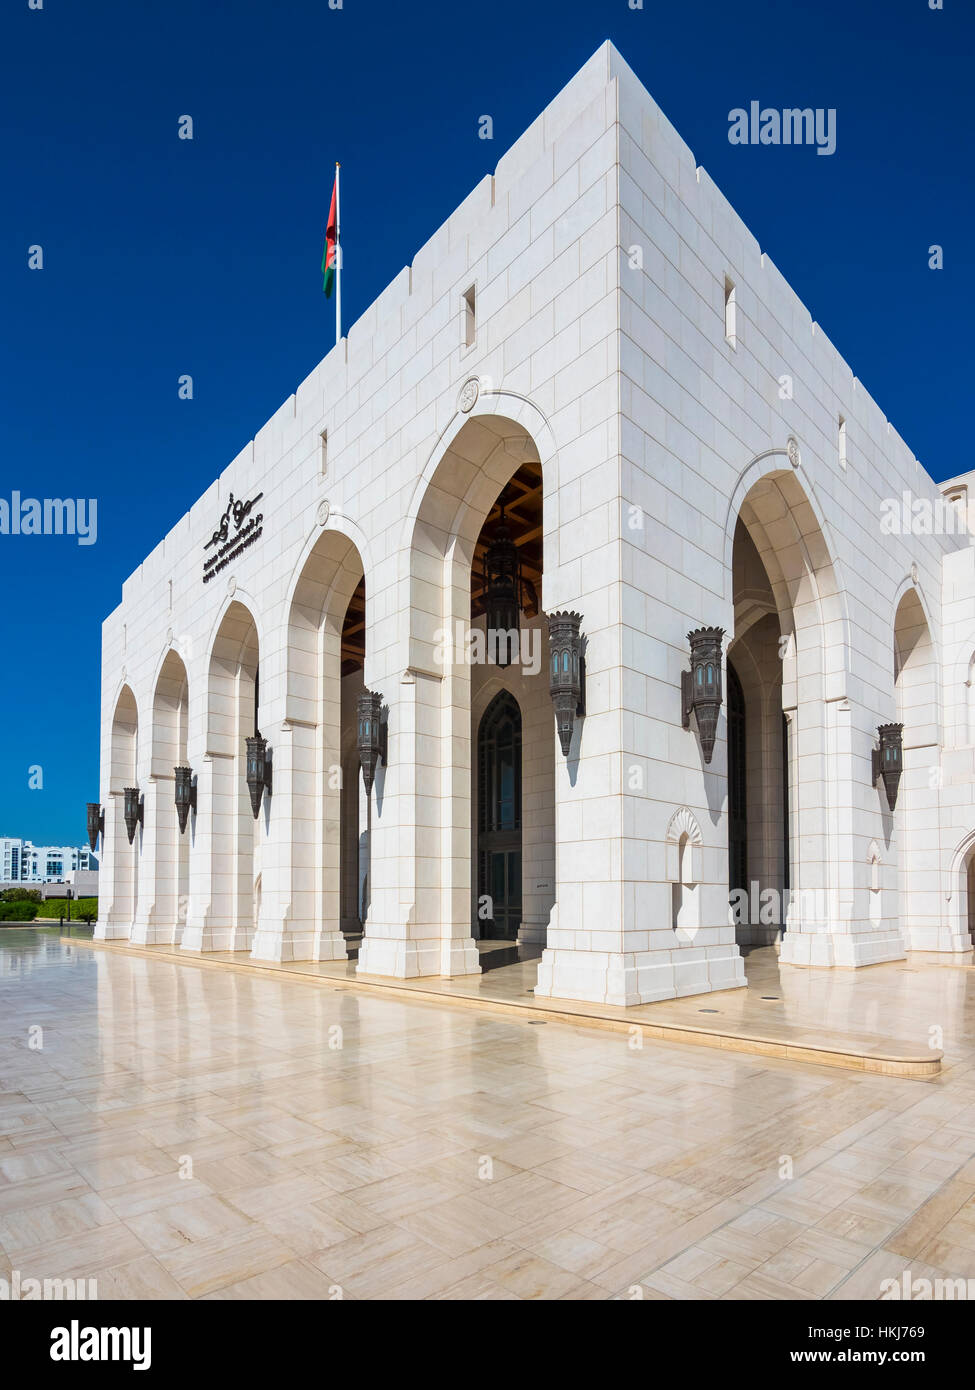 Das Royal Opera House, das Opernhaus von Muskat, Hauptstadt Maskat, Muscat Sultanat von Oman, Golfstaat, Arabische Halbinsel, Naher Osten, Asien Foto Stock